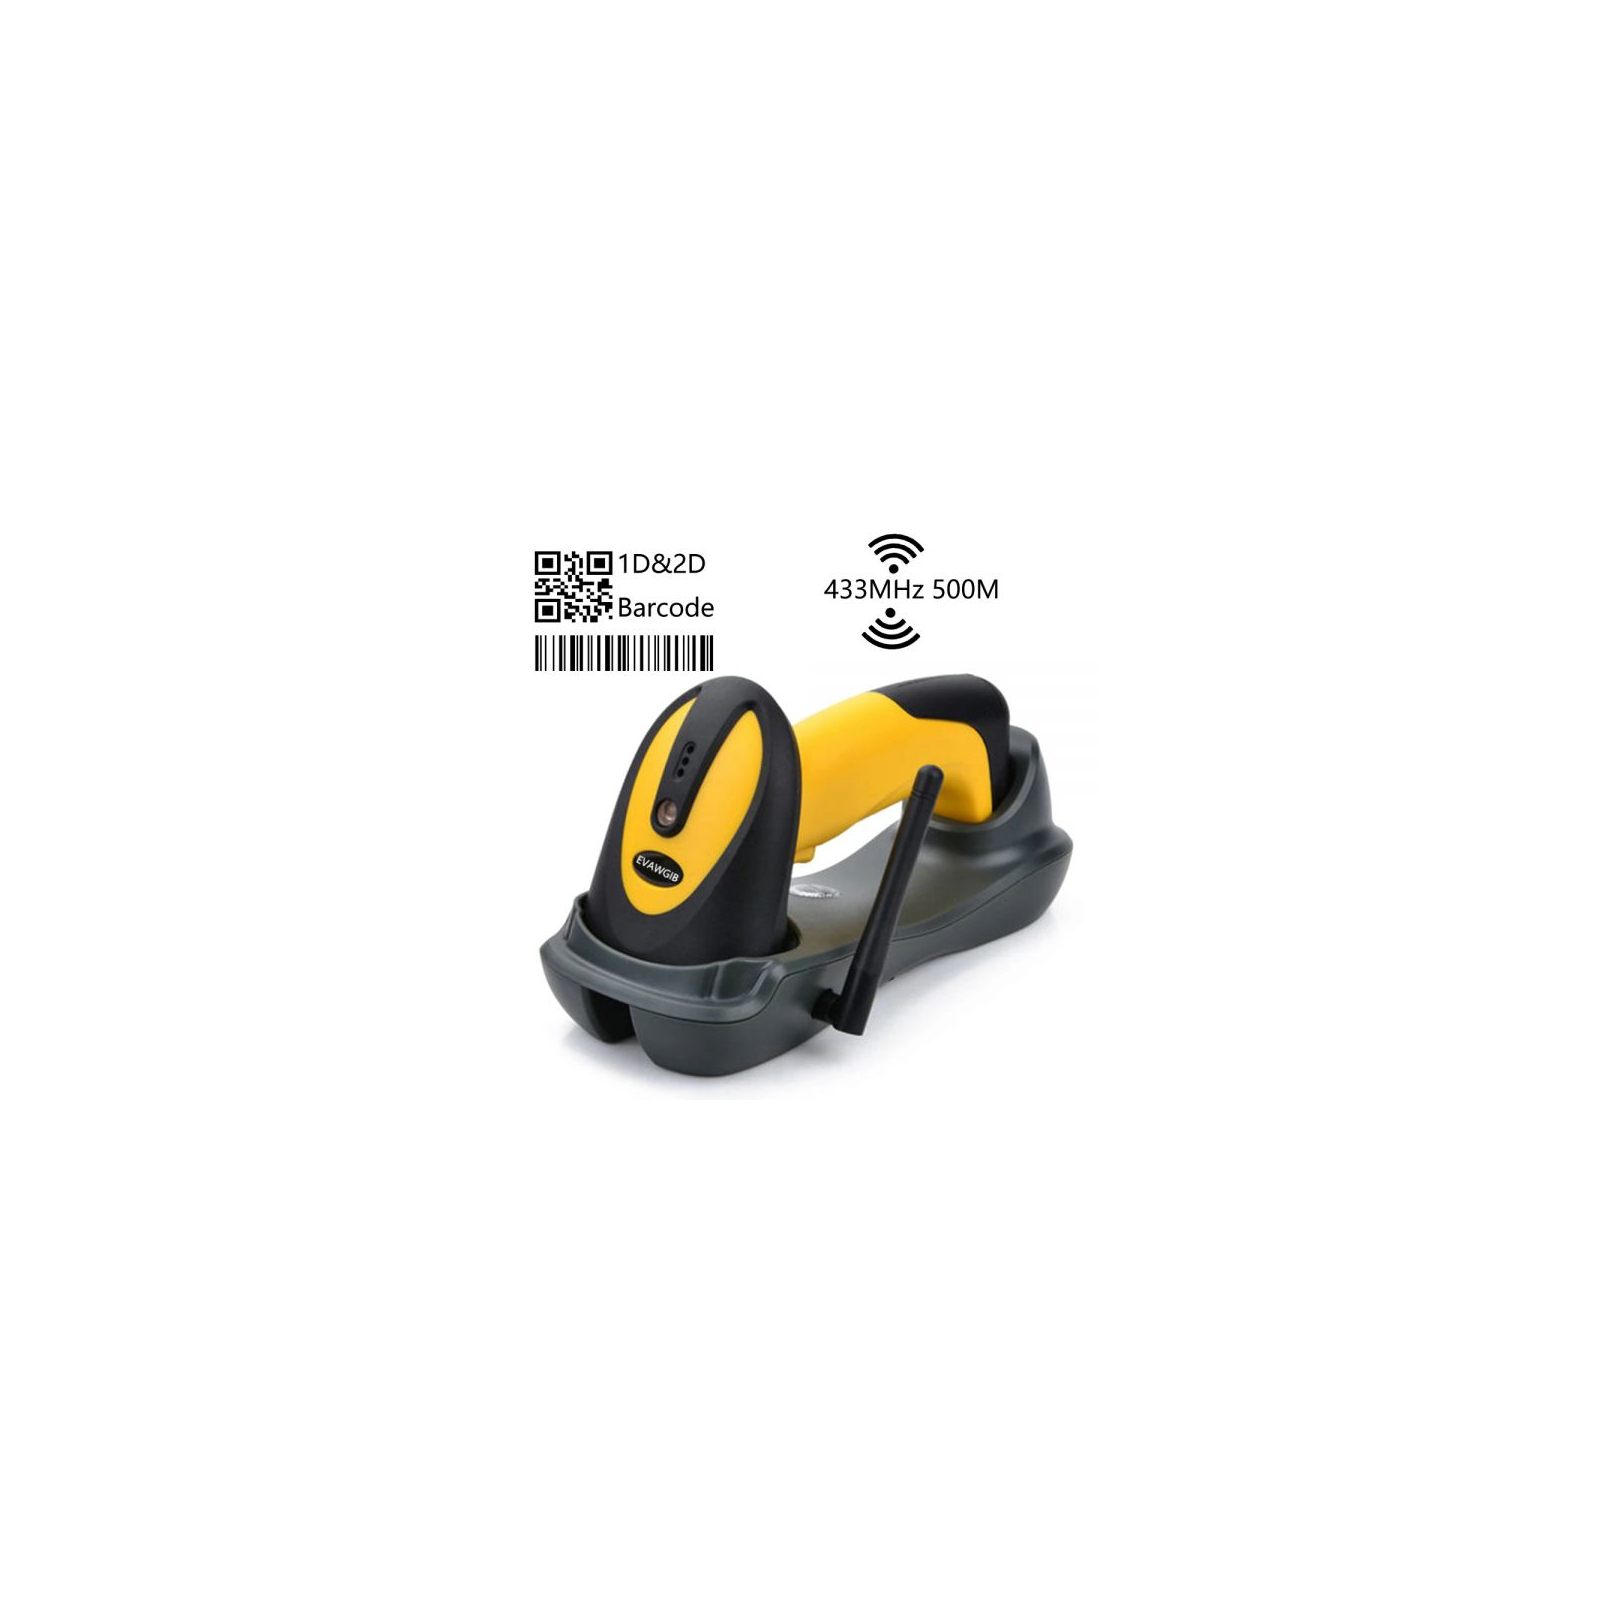 Сканер штрих-коду UKRMARK EV-W2503 2D, 433MHz, USB, IP64, stand, black/yellow (00769) зображення 4